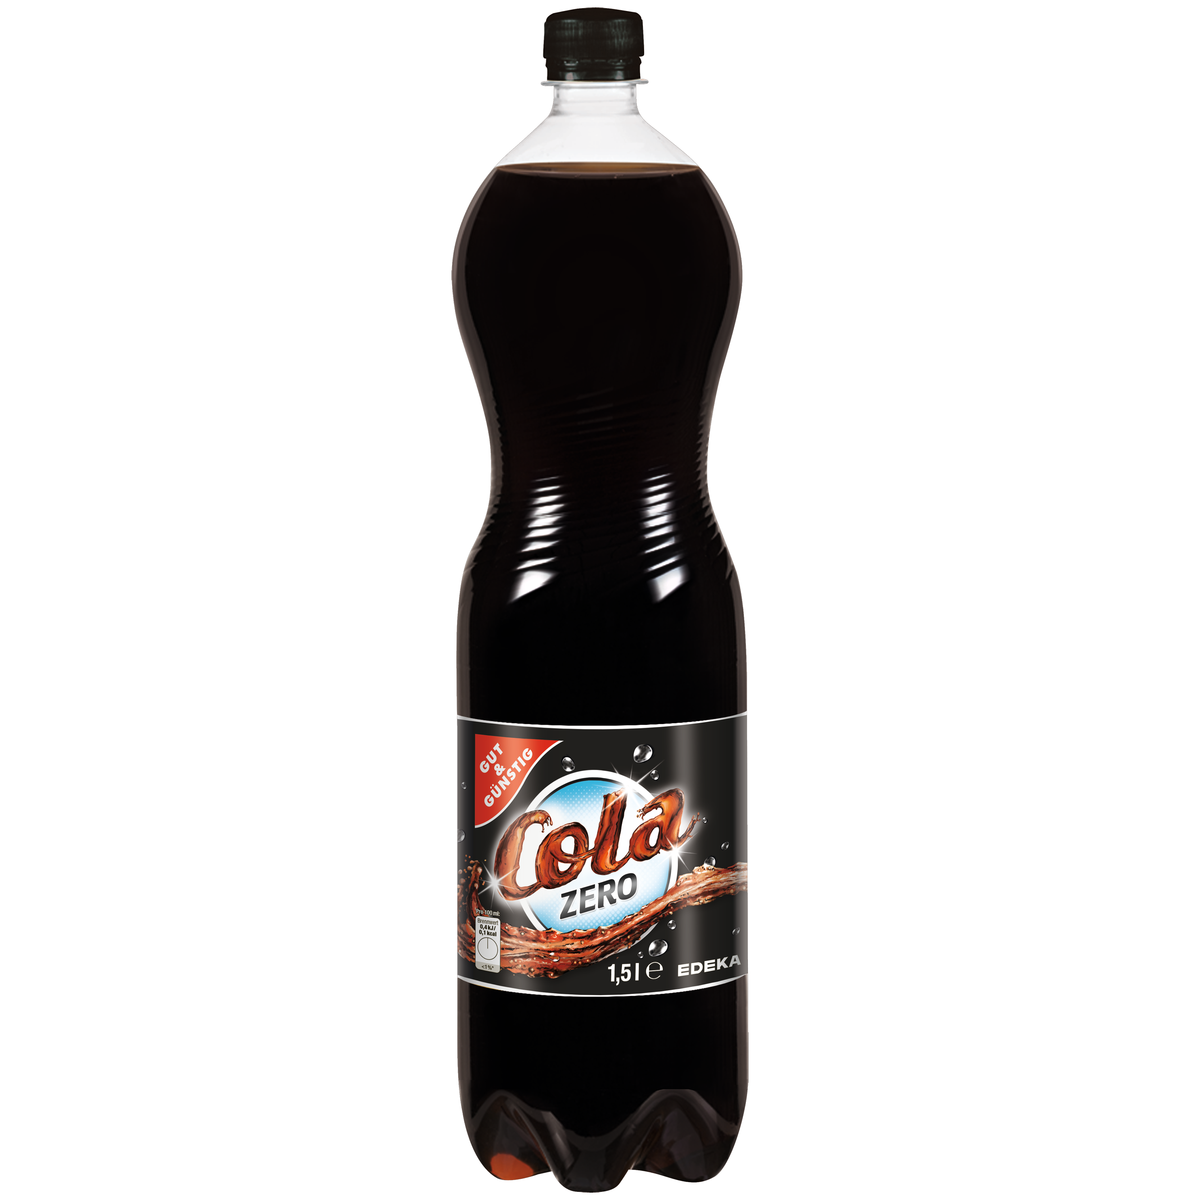 EDEKA Preß - Probiert jetzt den neuen Sirup von Coca Cola. Jetzt bei uns  erhältlich. #cocacola #sirup #edekasüdwest #bruchmühlbachmiesau #edekapress  @cocacola_de #getränkesirup #saarpfalzkreis #schönenbergkübelberg